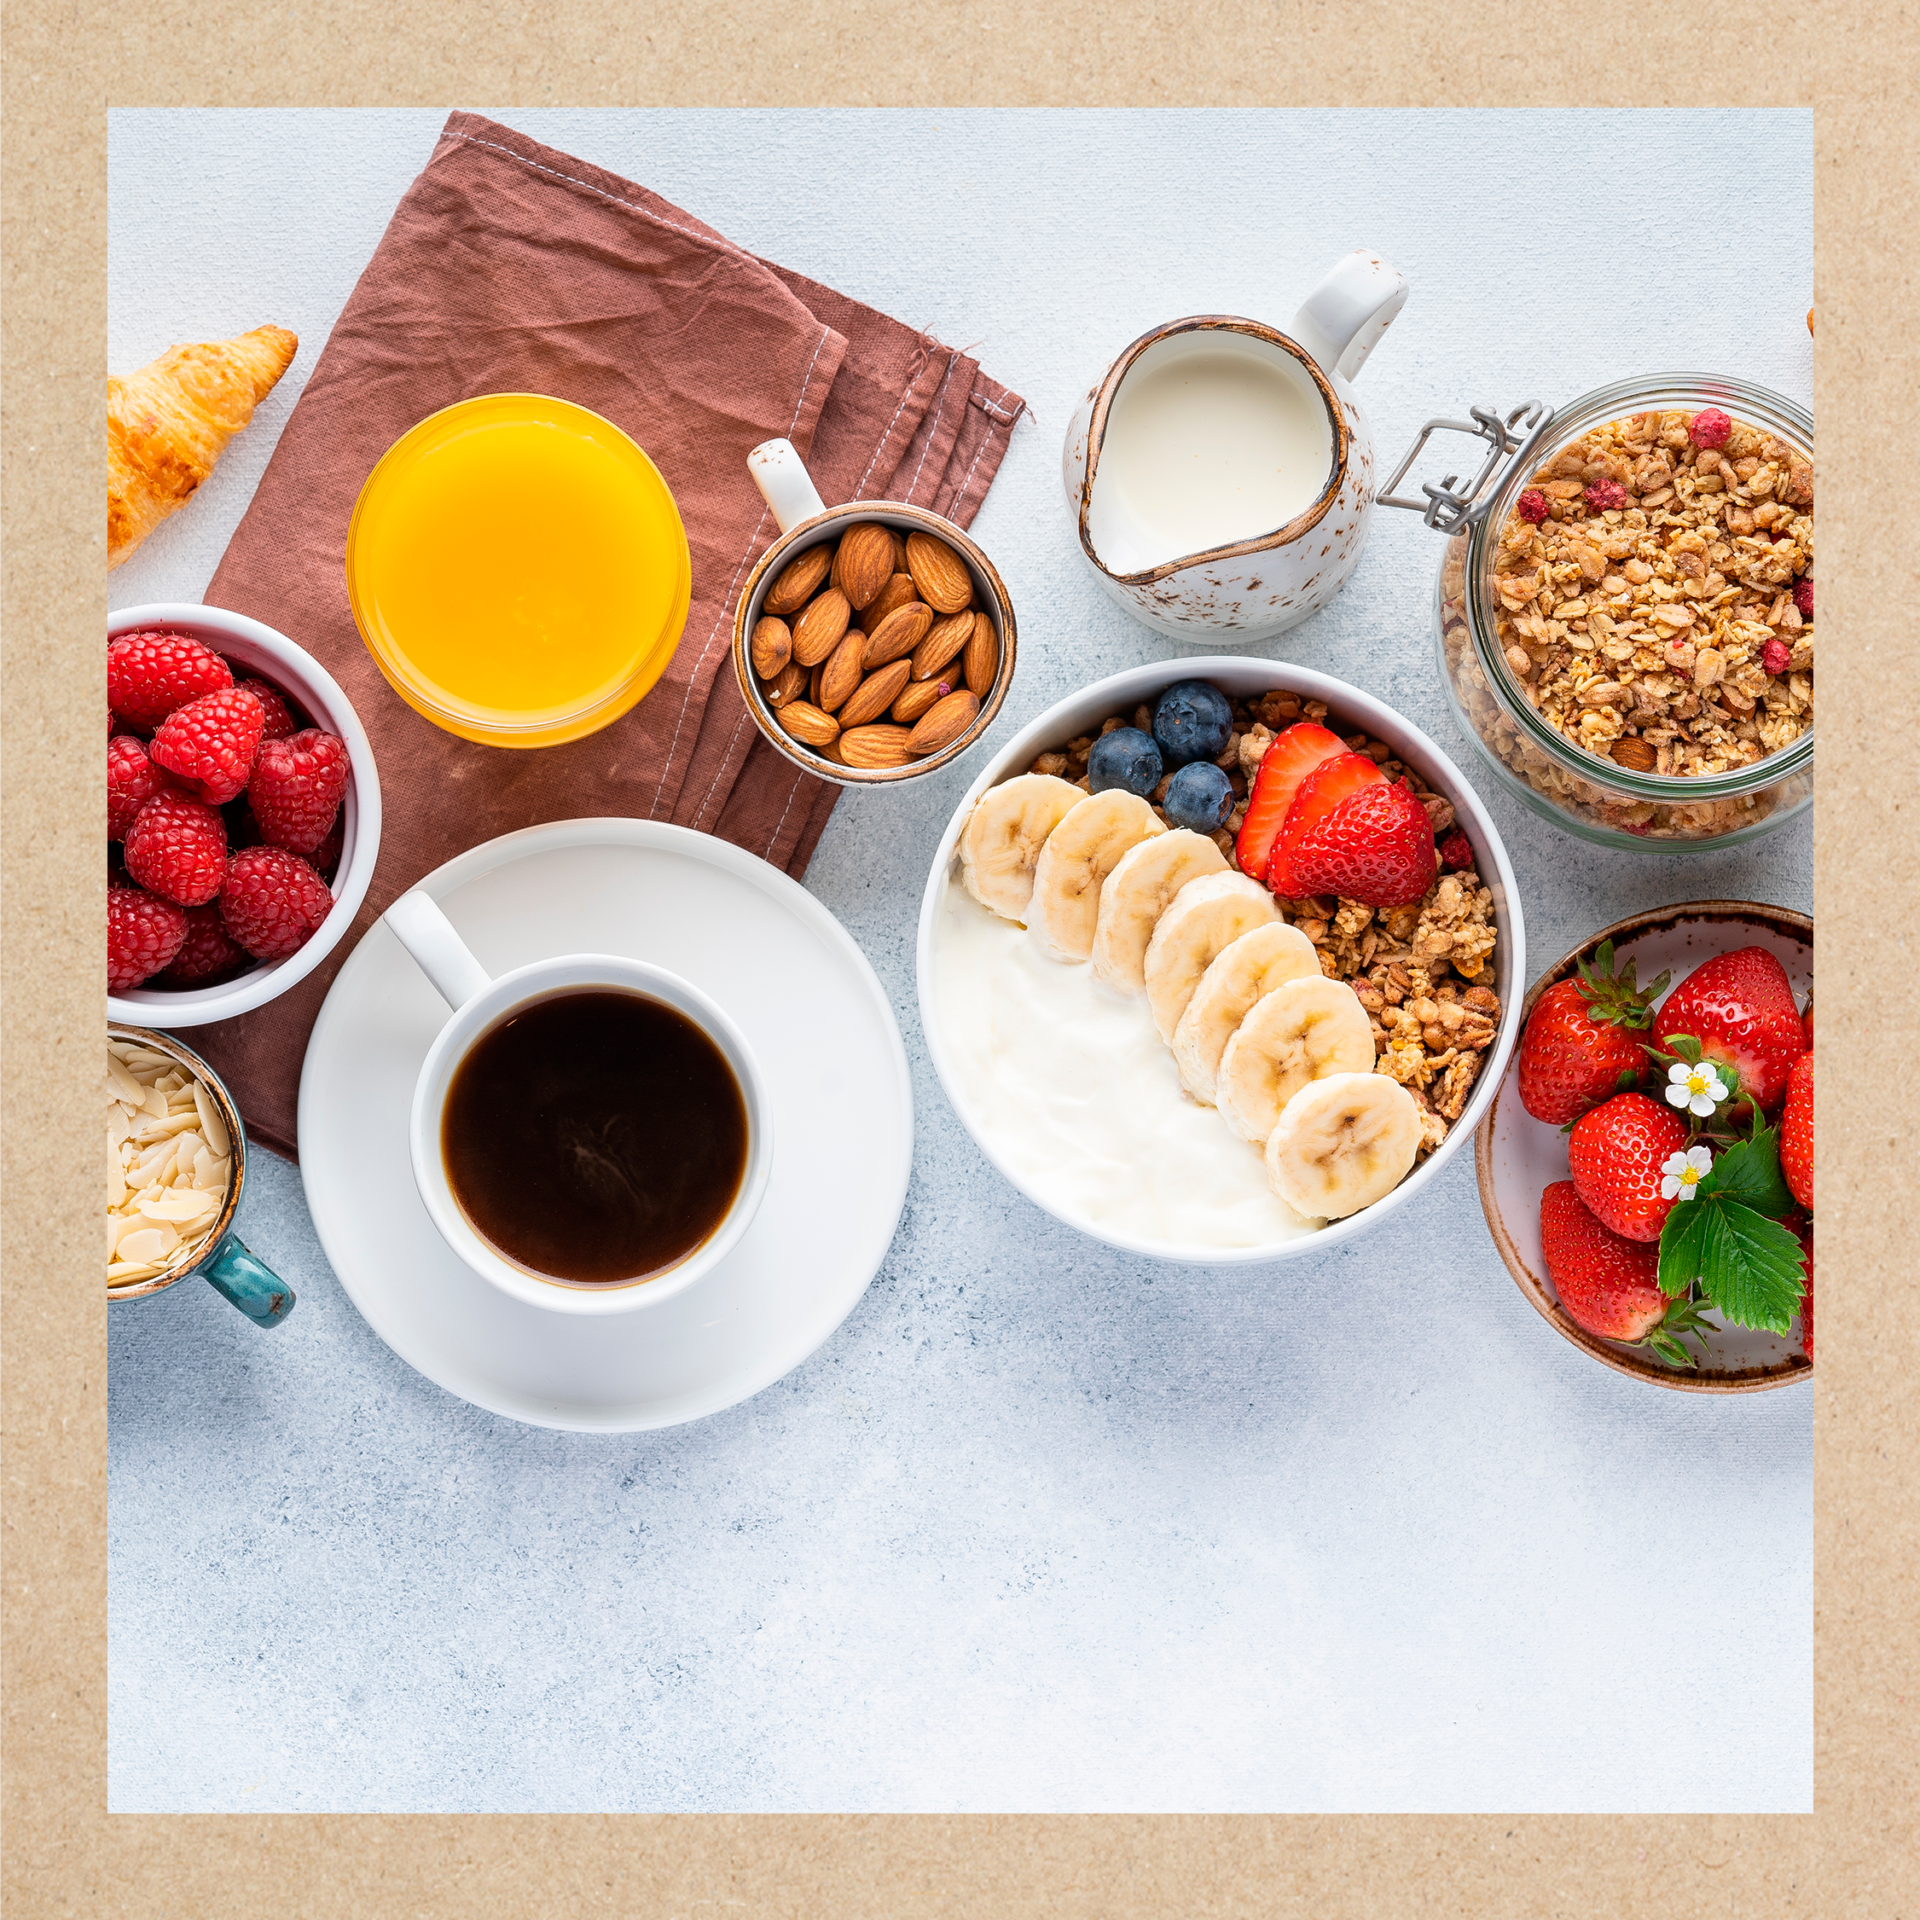 Imagen representativa de un desayuno fácil y saludable